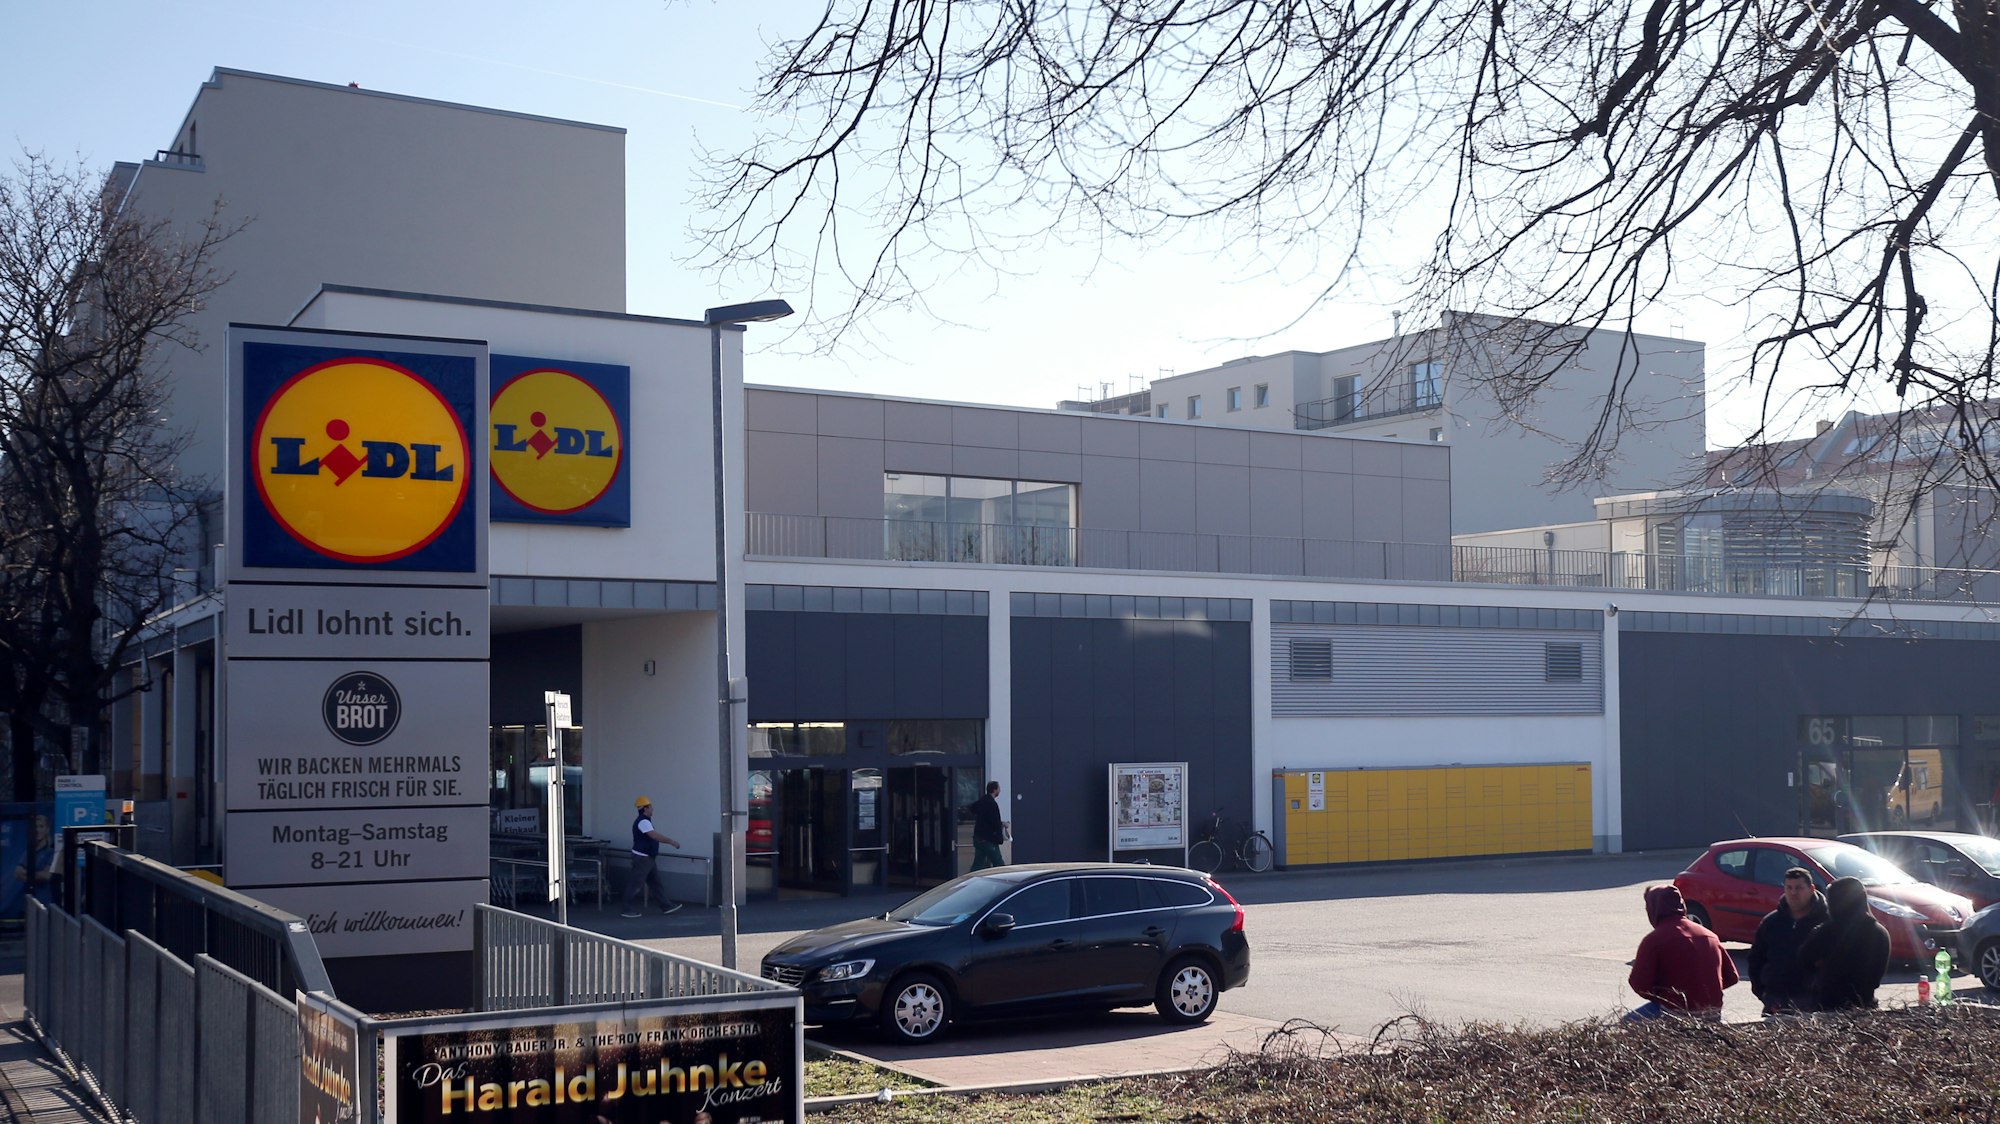 Der Discounter Lidl ruft derzeit einige seiner Fix-Produkte zurück, da beim Verzehr eine Bleivergiftung drohen könnte. Das Symbolfoto zeigt eine Lidl Filiale im Februar 2019 in Berlin.